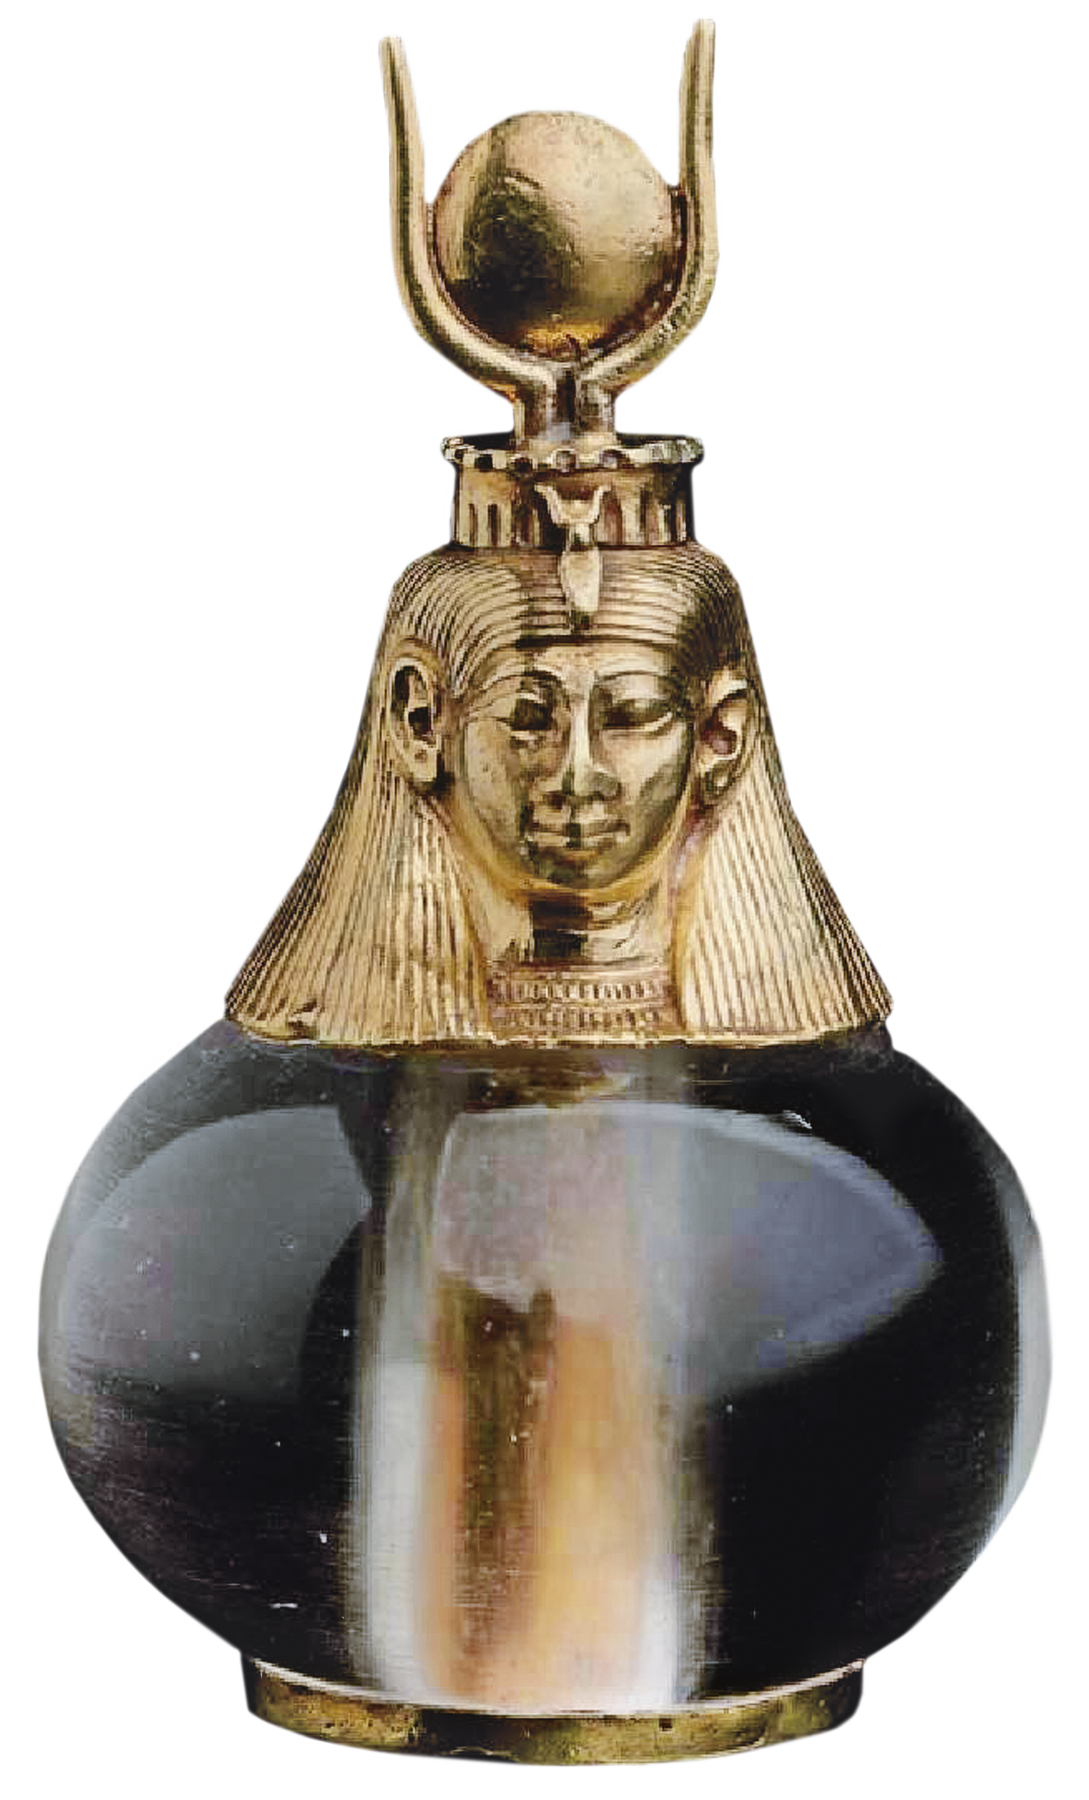 Pingente. Objeto de formato arredondado, composto de uma cabeça humana dourada, com longos cabelos e uma coroa com dois chifres laterais e um círculo no centro.